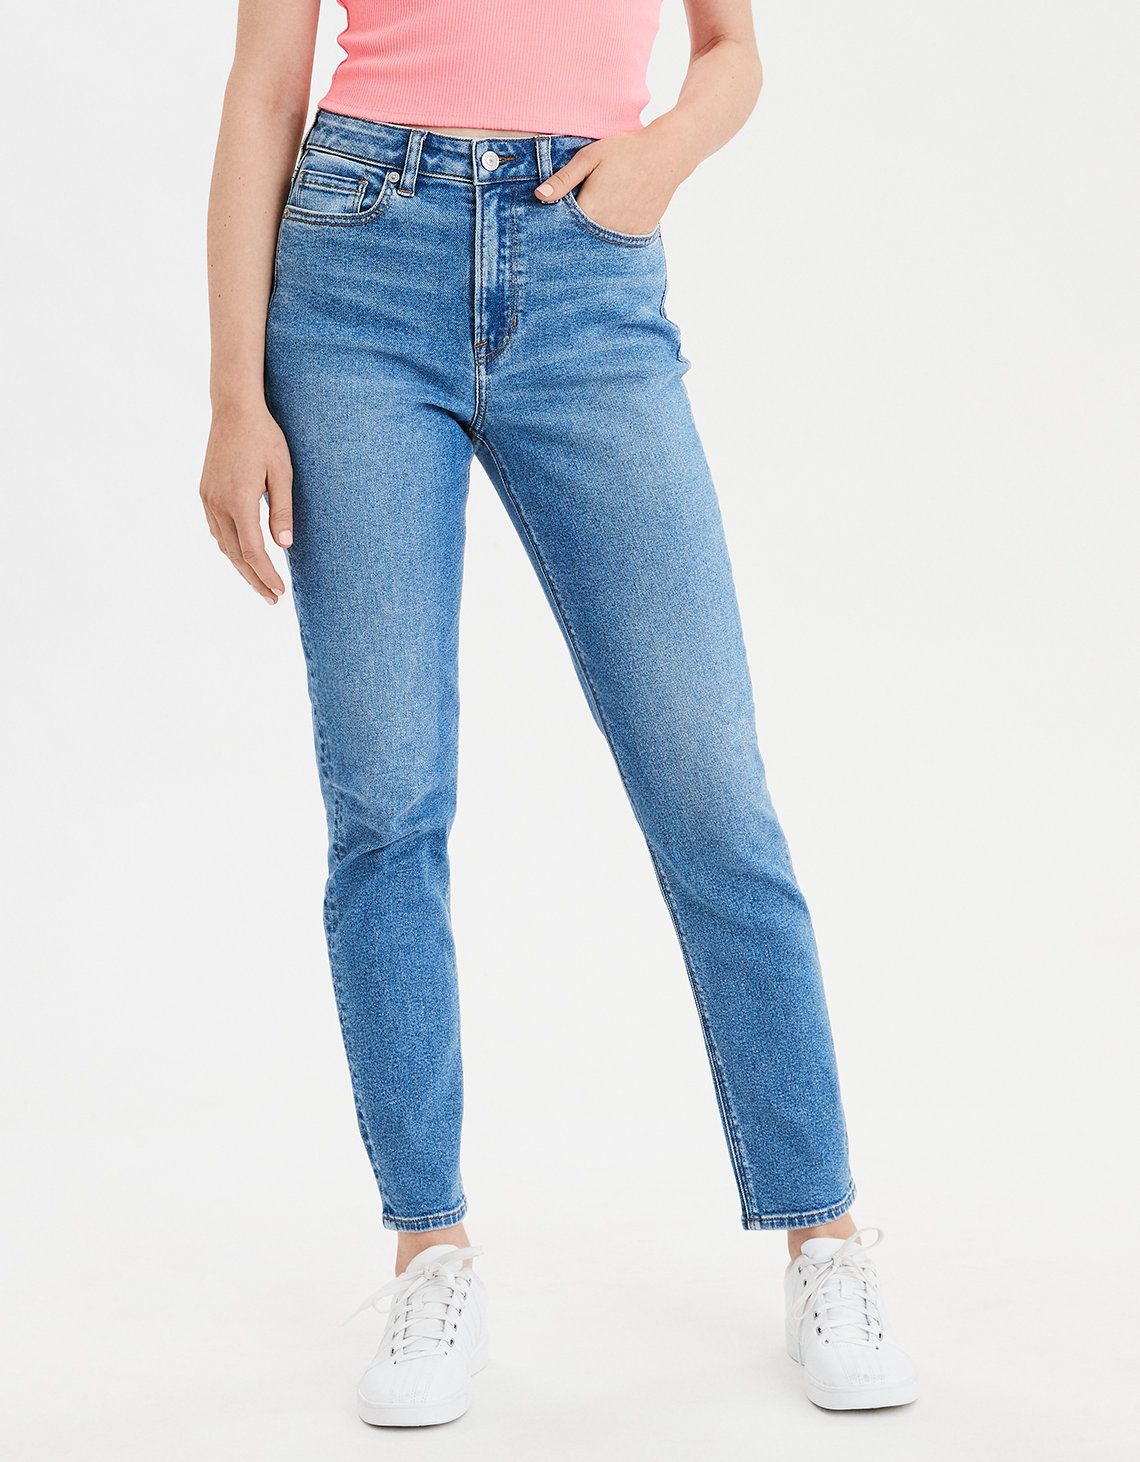 best women's jeans brands 2019